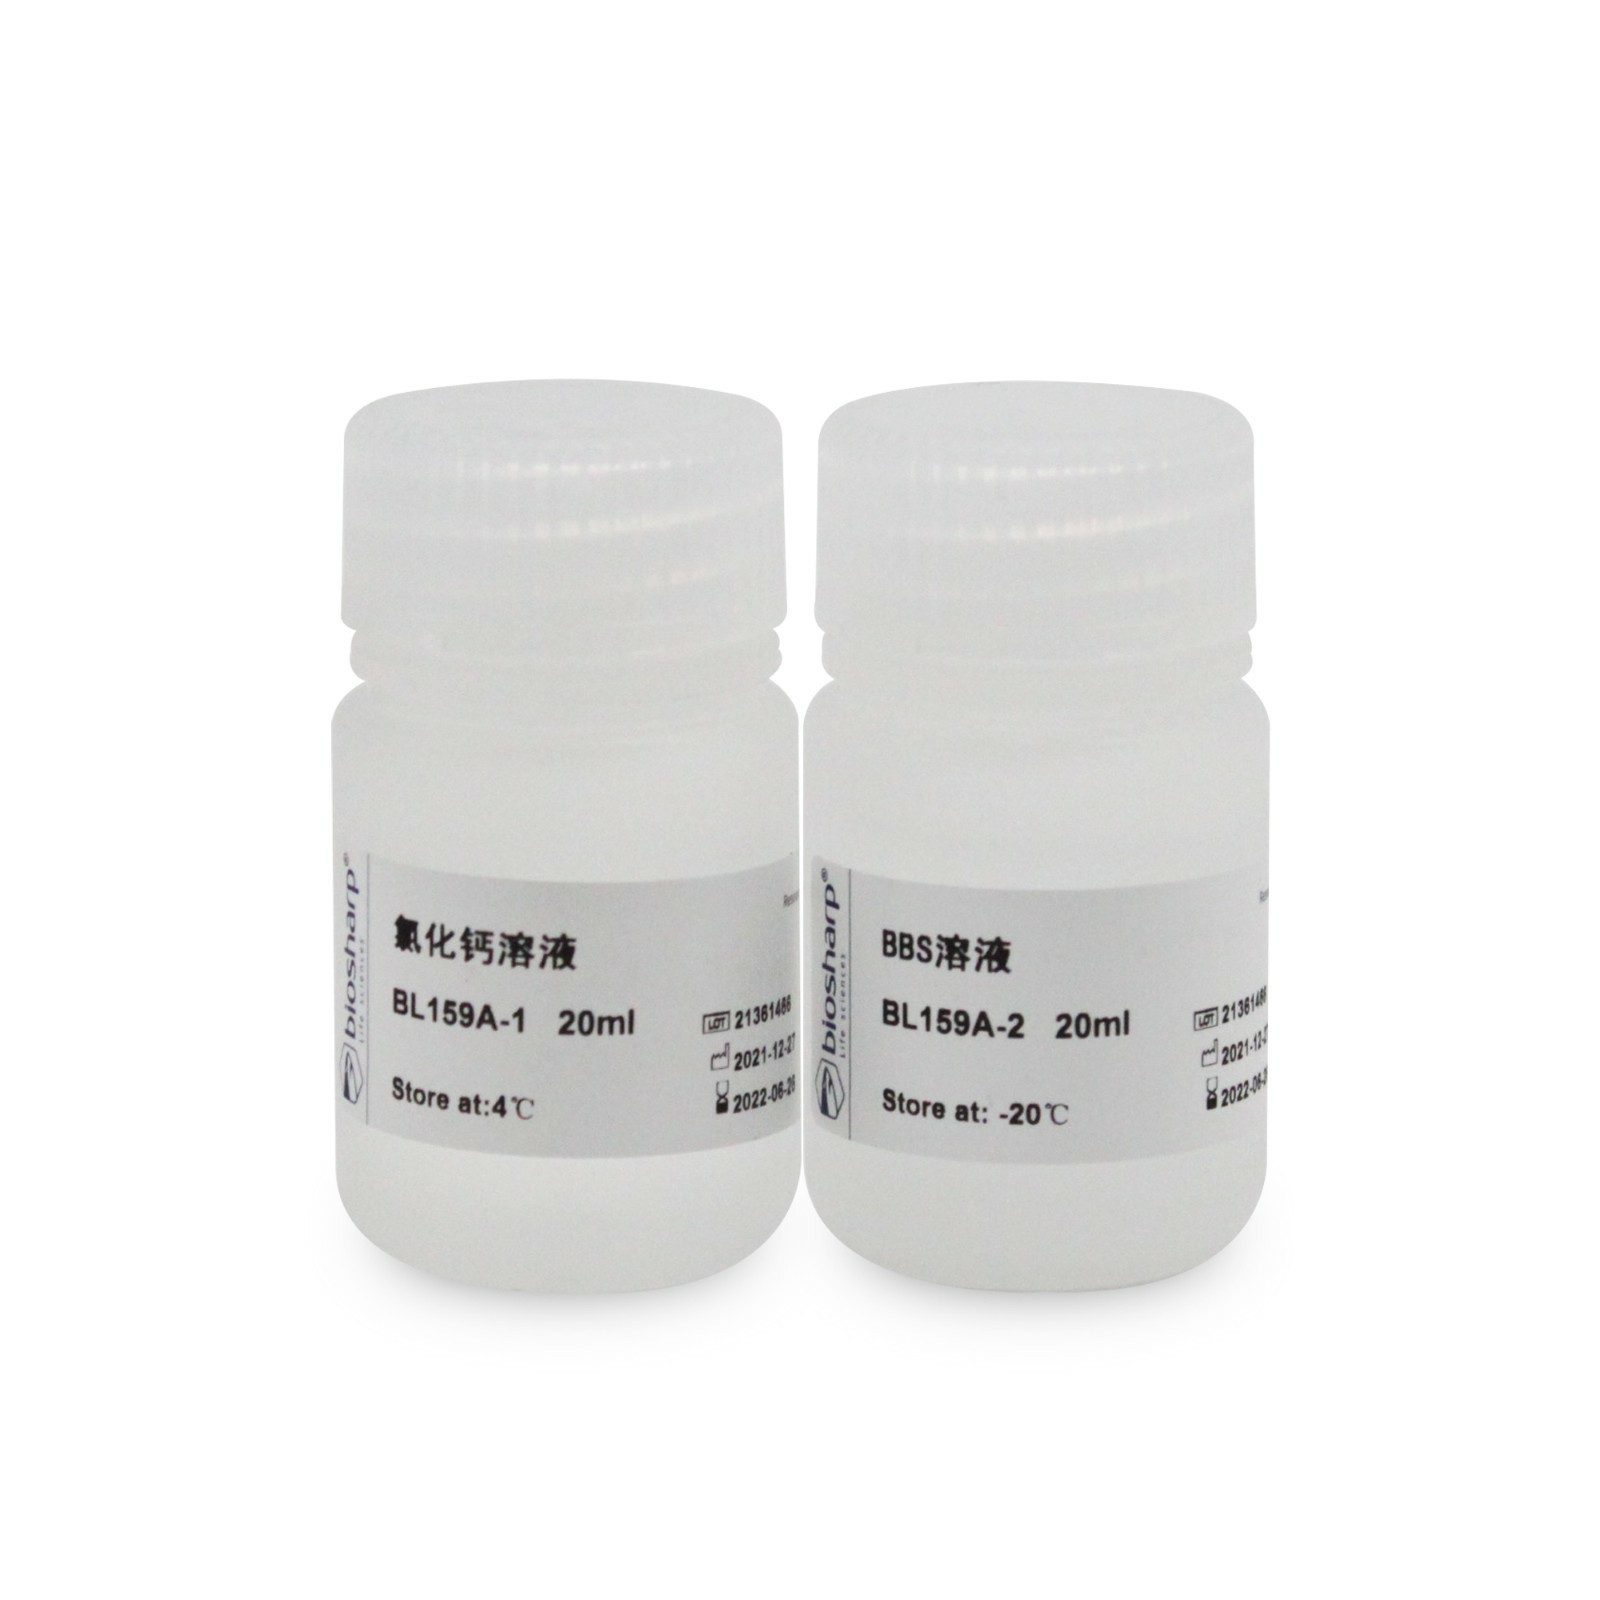 磷酸钙法培养耗材-细胞转染试剂盒